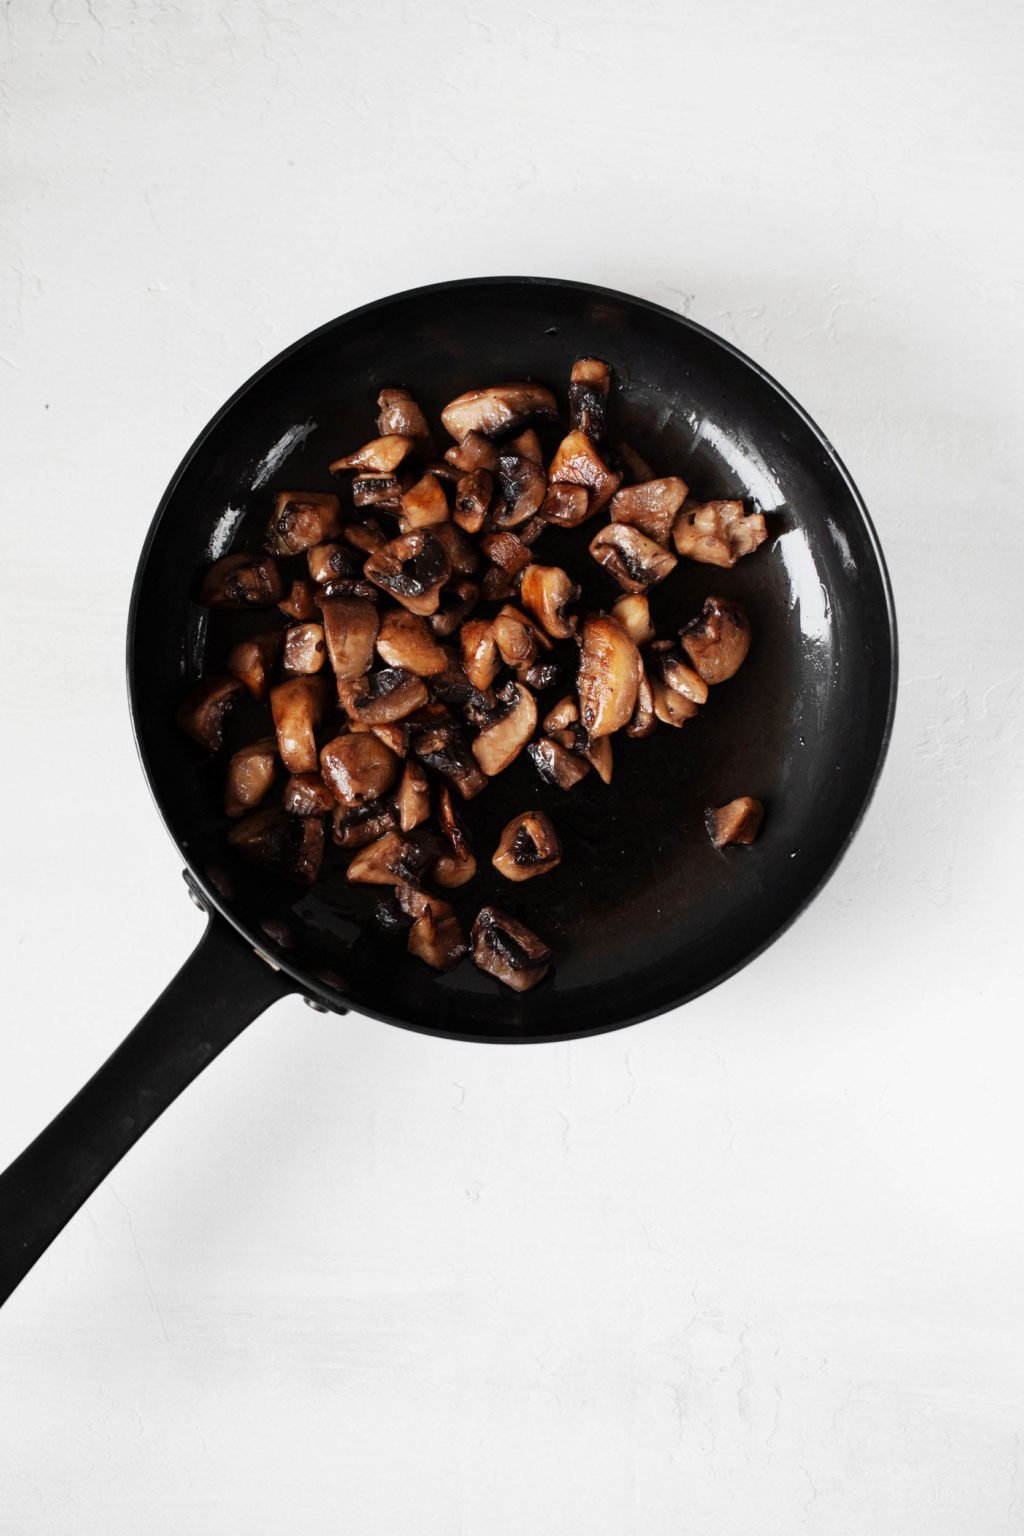 Les champignons frits sont représentés dans une petite casserole noire.  La casserole repose sur une surface blanche.